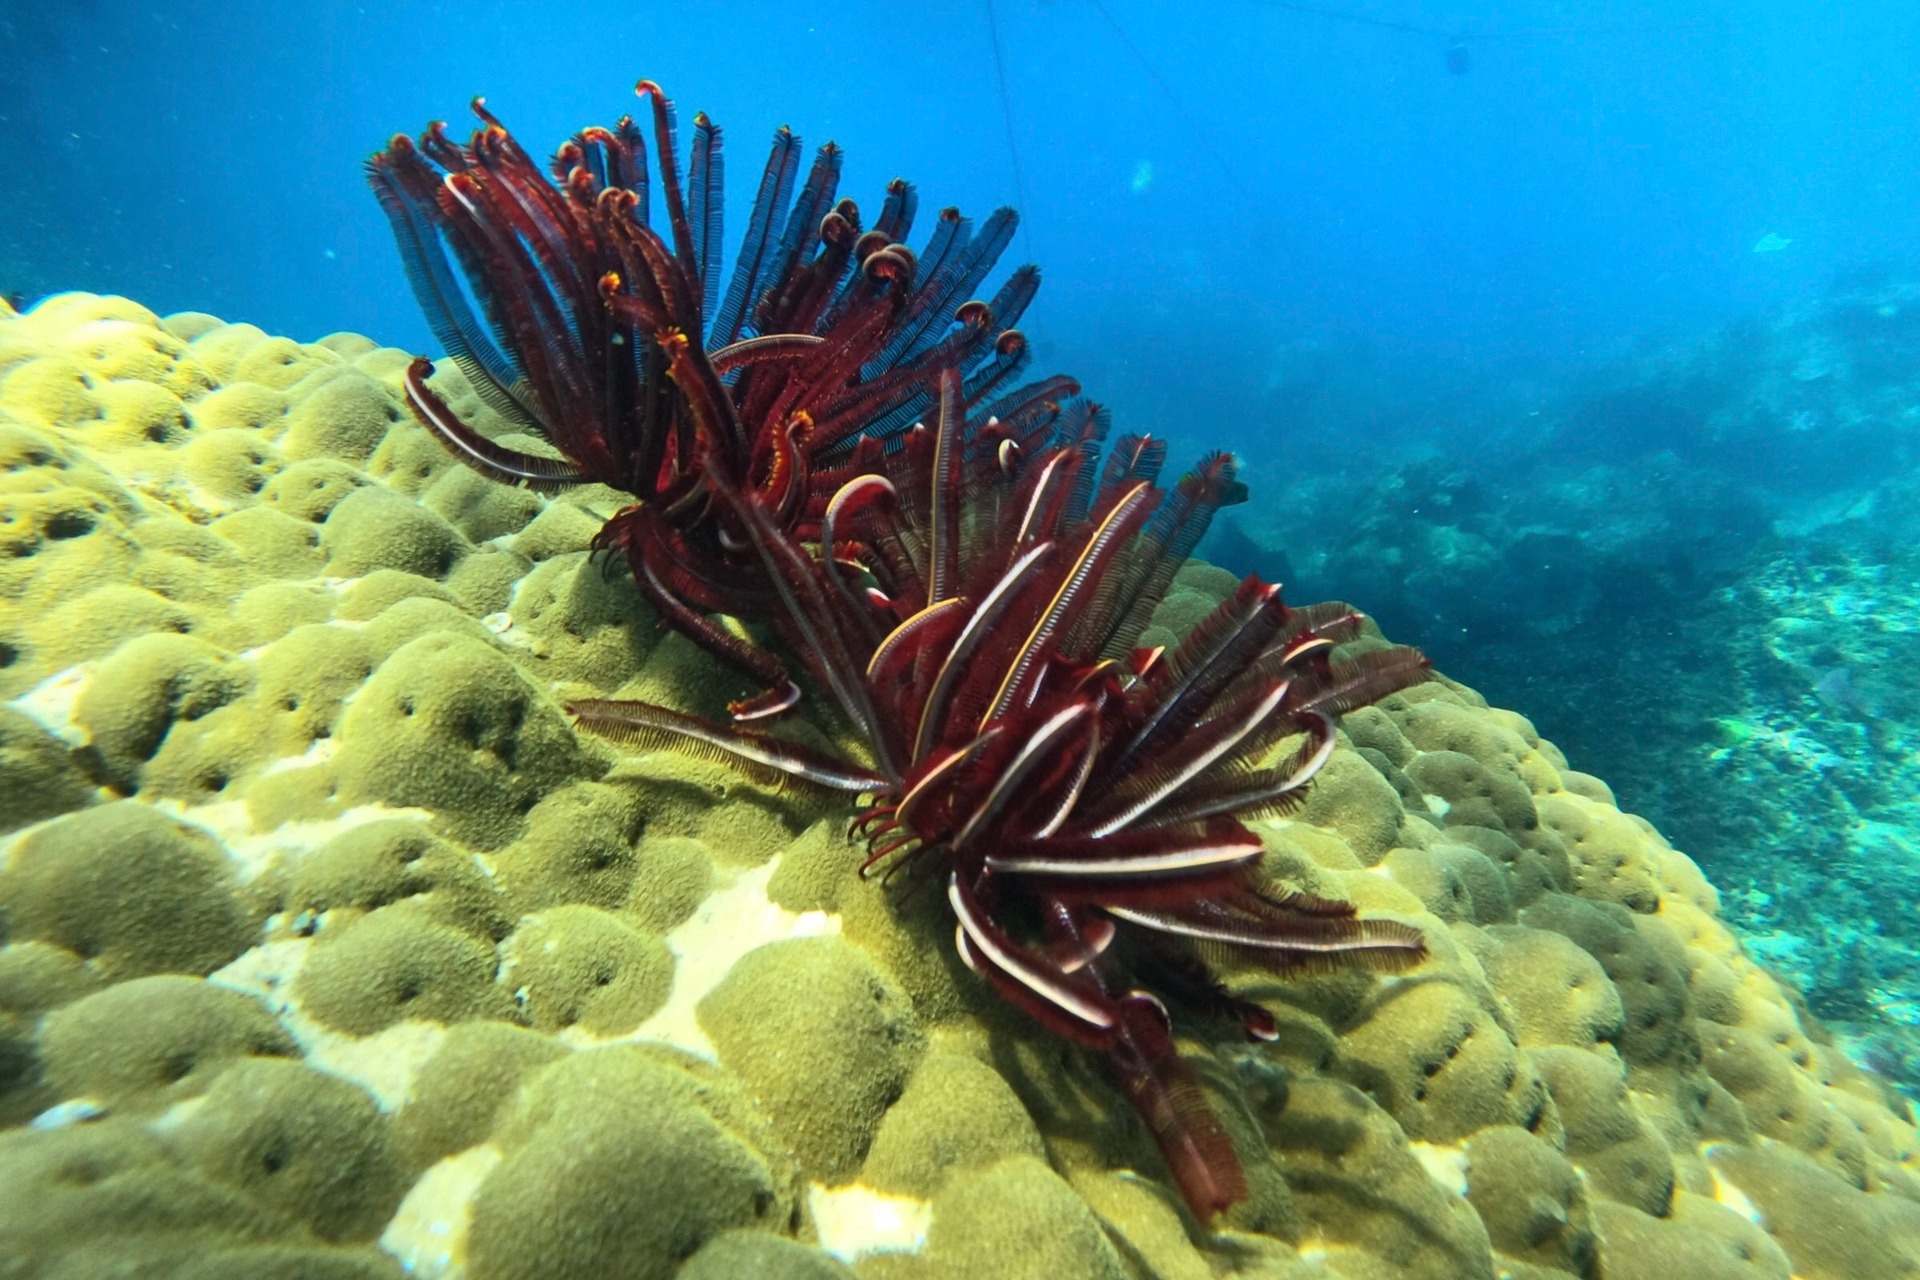 Ngỡ ngàng trước vẻ đẹp rạn san hô, sinh vật dưới đáy biển Đà Nẵng - Ảnh 6.